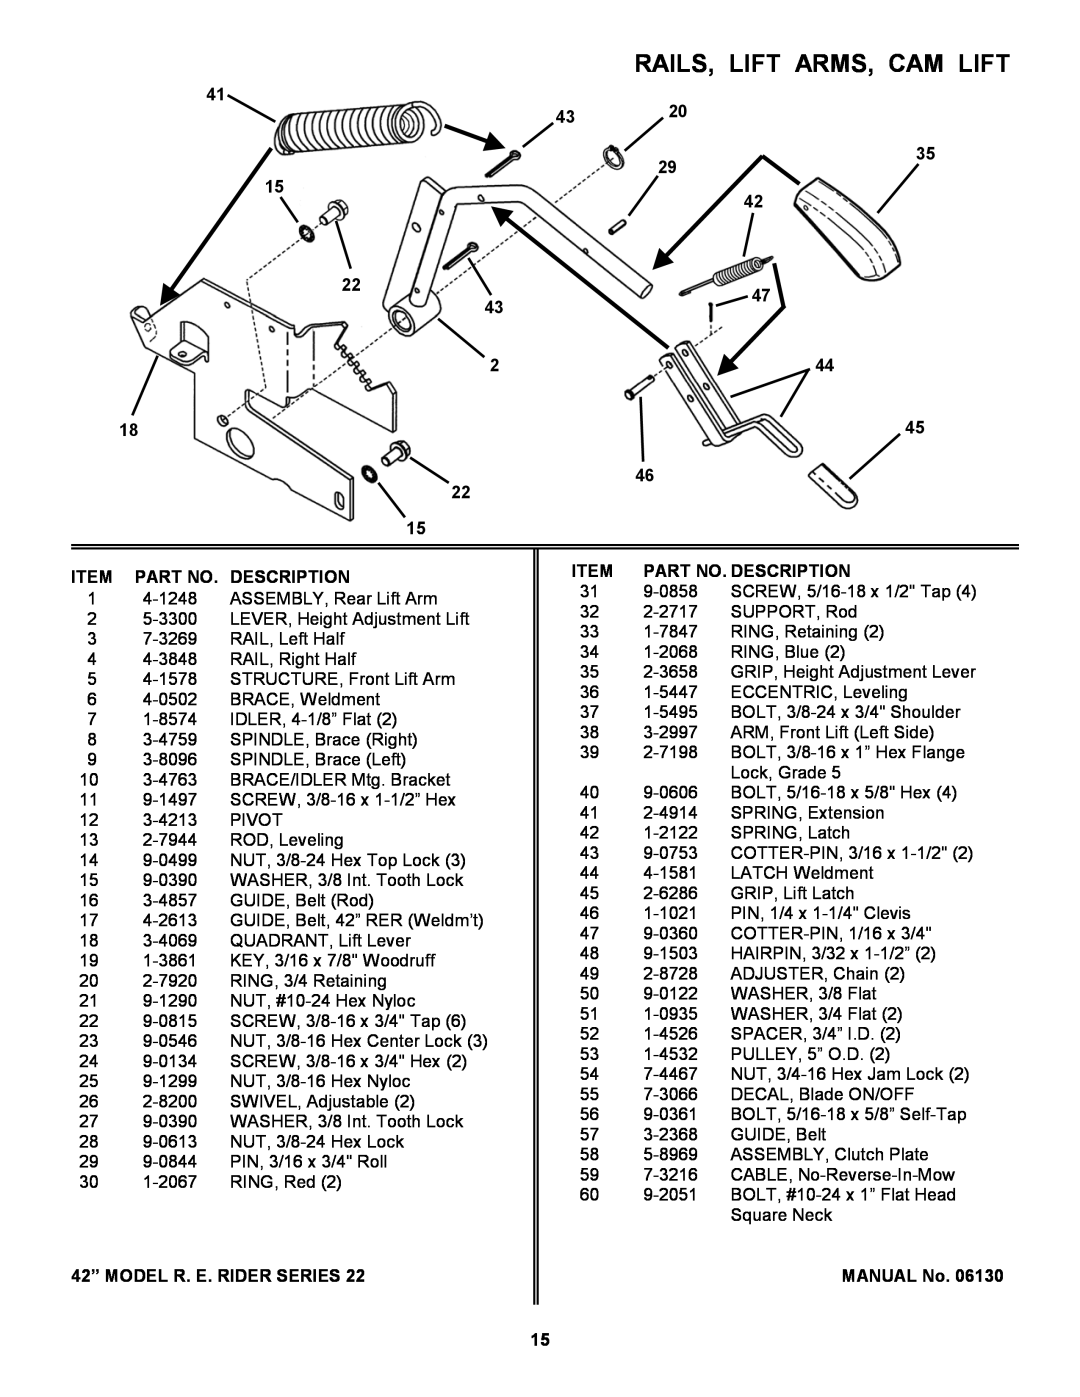 Snapper 421622BVE manual Rails, Lift Arms, Cam Lift, Item Part No. Description, 42” MODEL R. E. RIDER SERIES, MANUAL No 